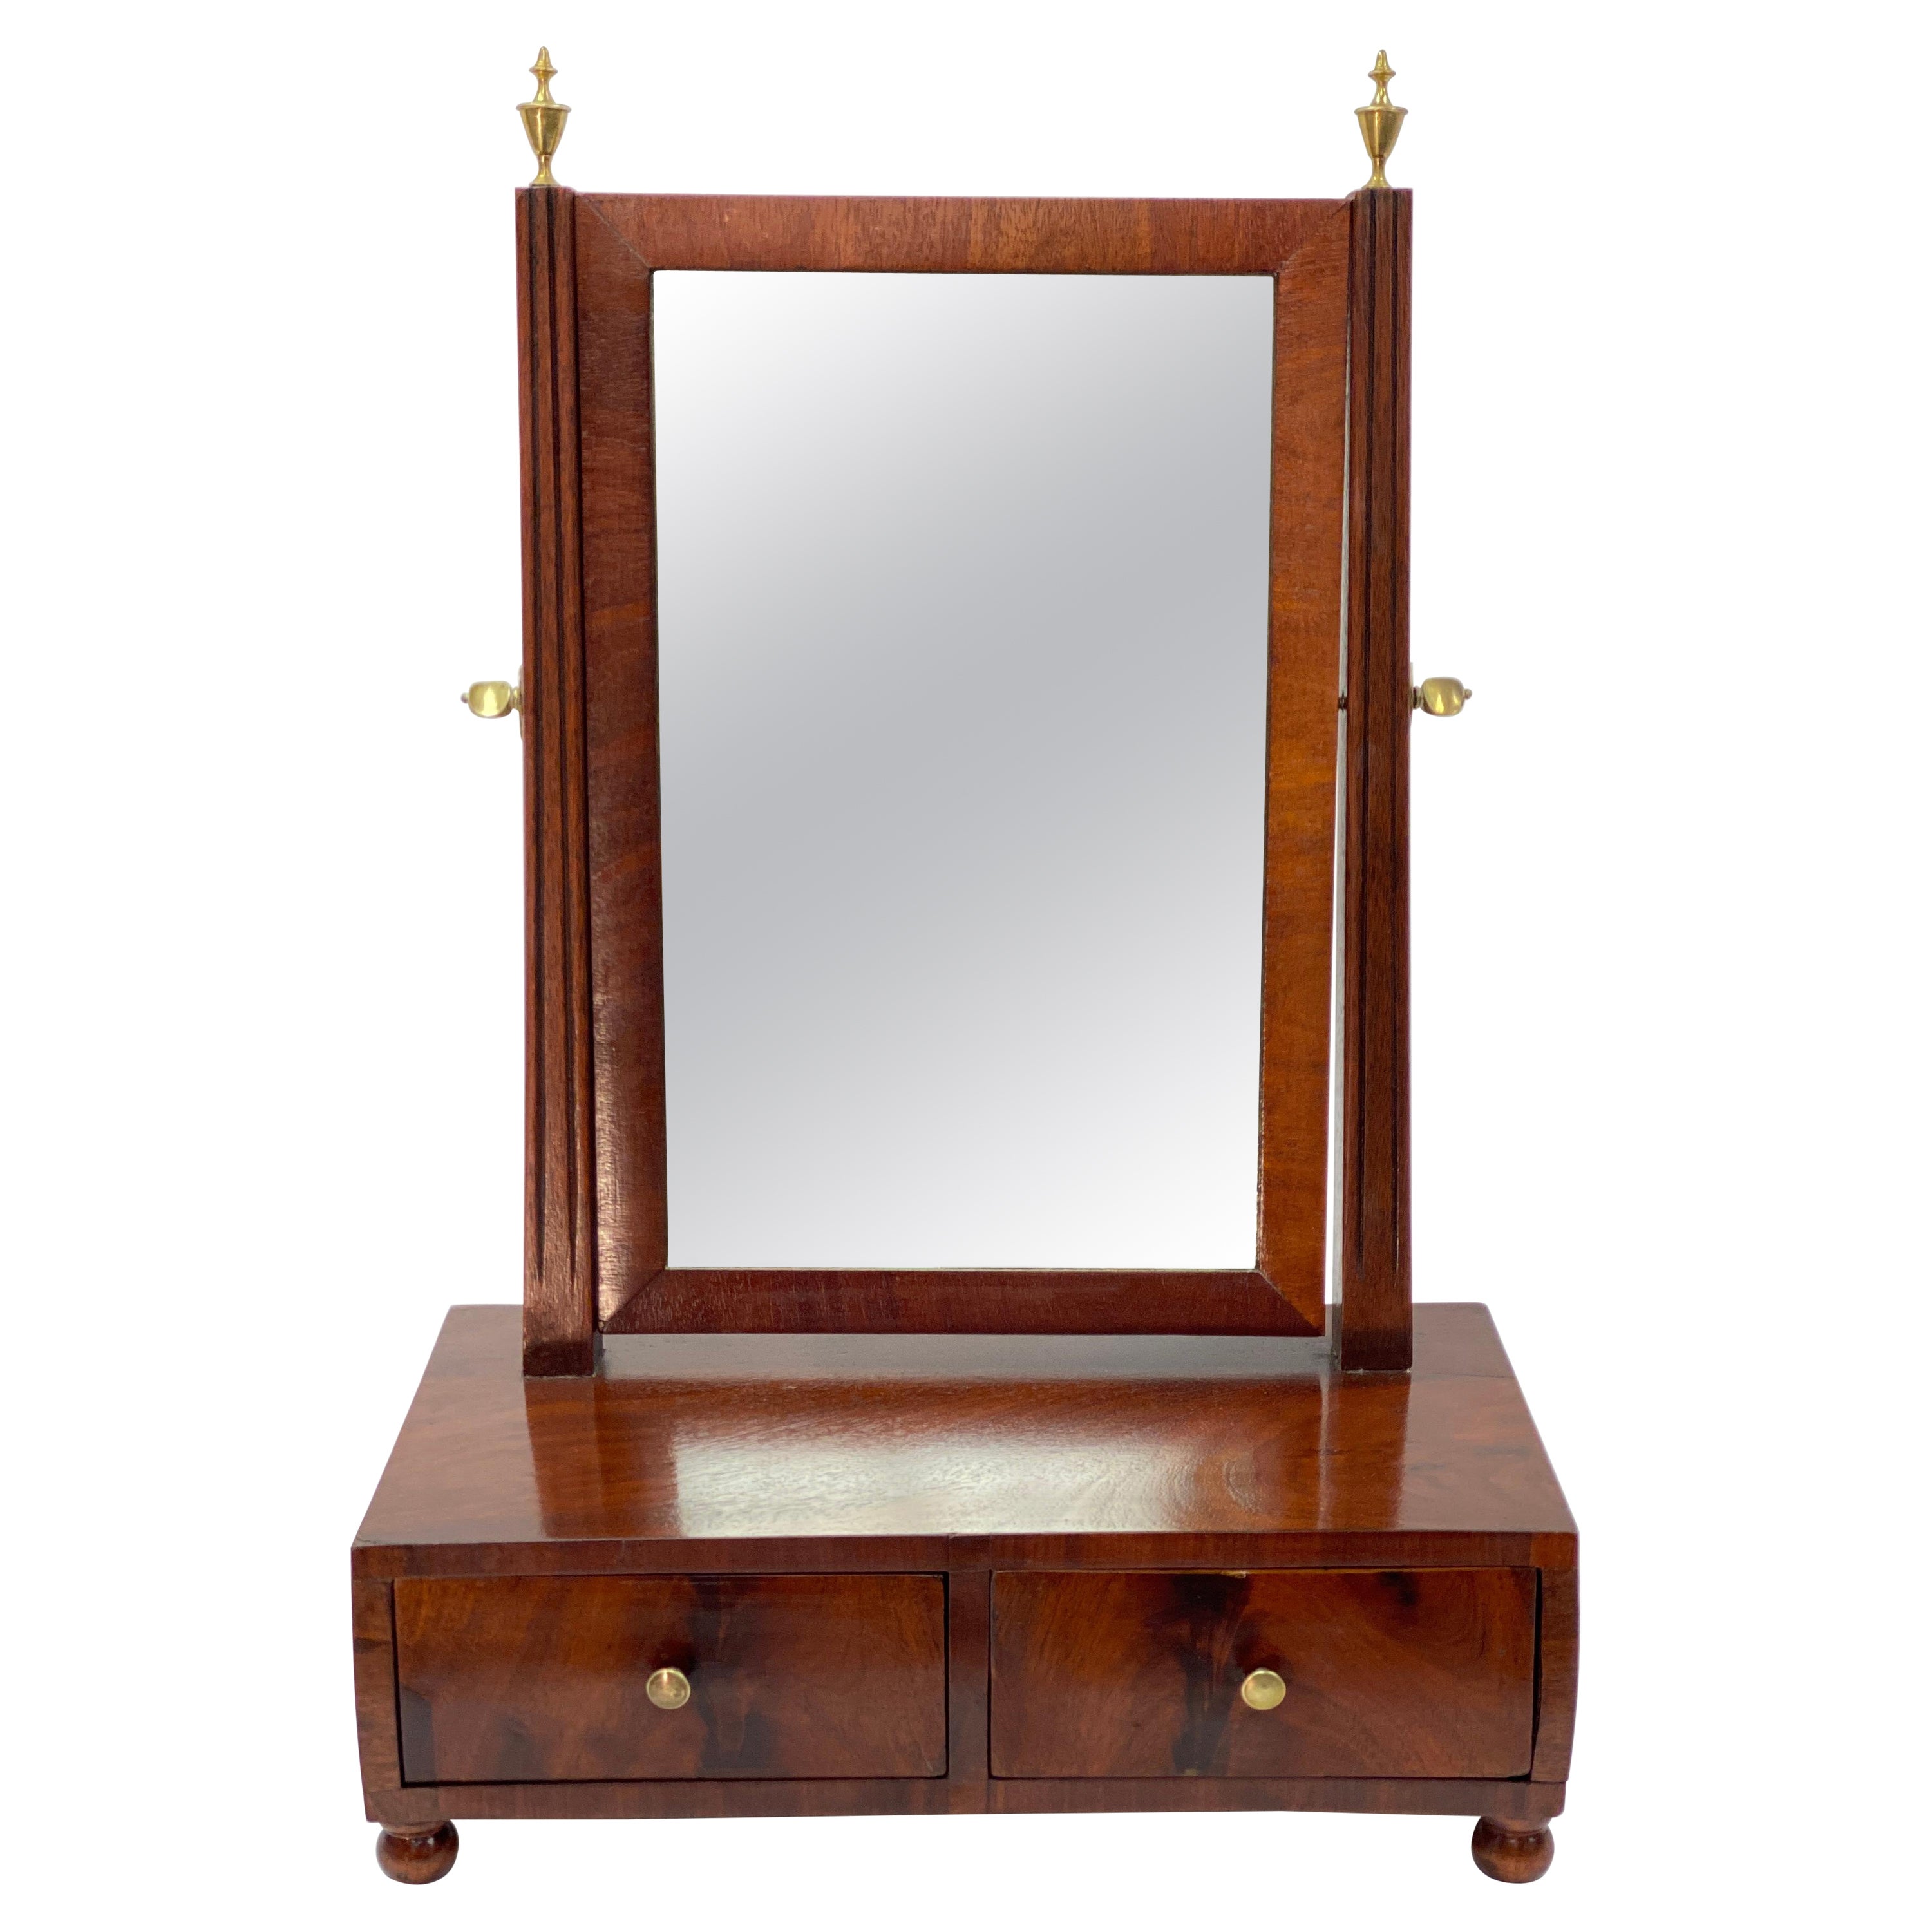 Miroir à abat-jour en acajou du début du XIXe siècle, vers 1810